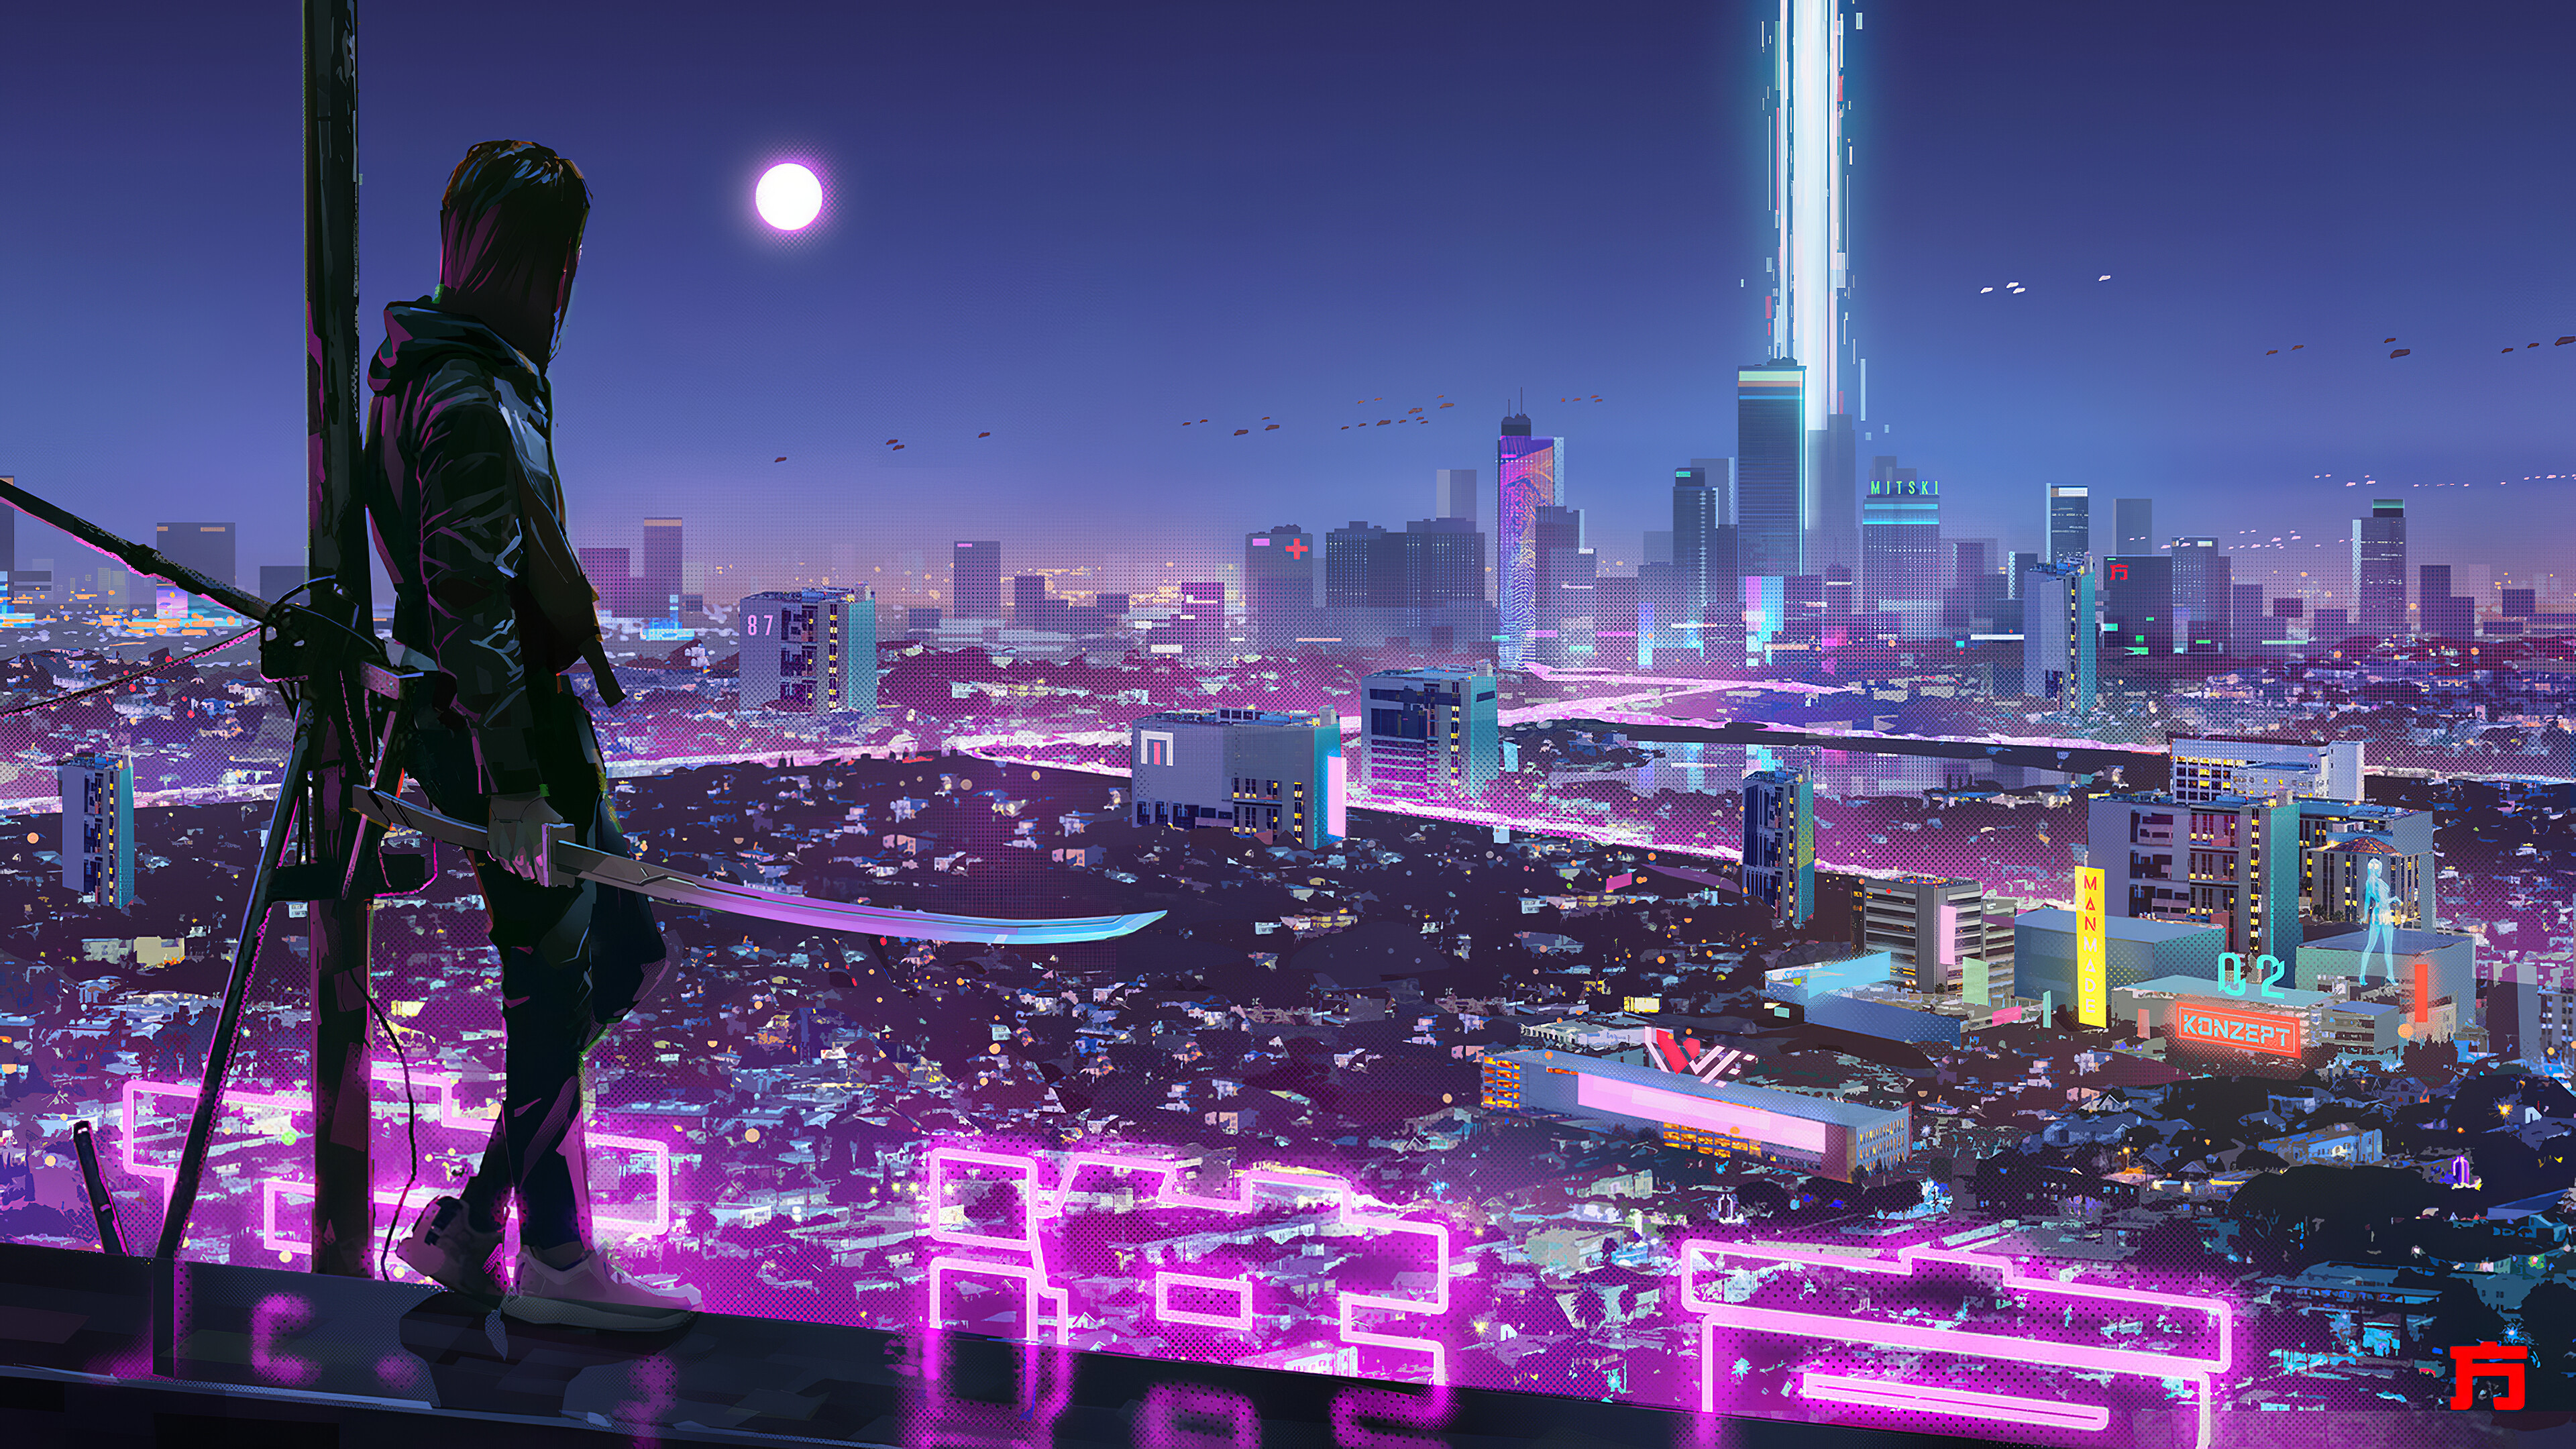 Ninja Katana Sci-Fi City Neon Lights Wallpaper 4k Ultra HD ID:5026